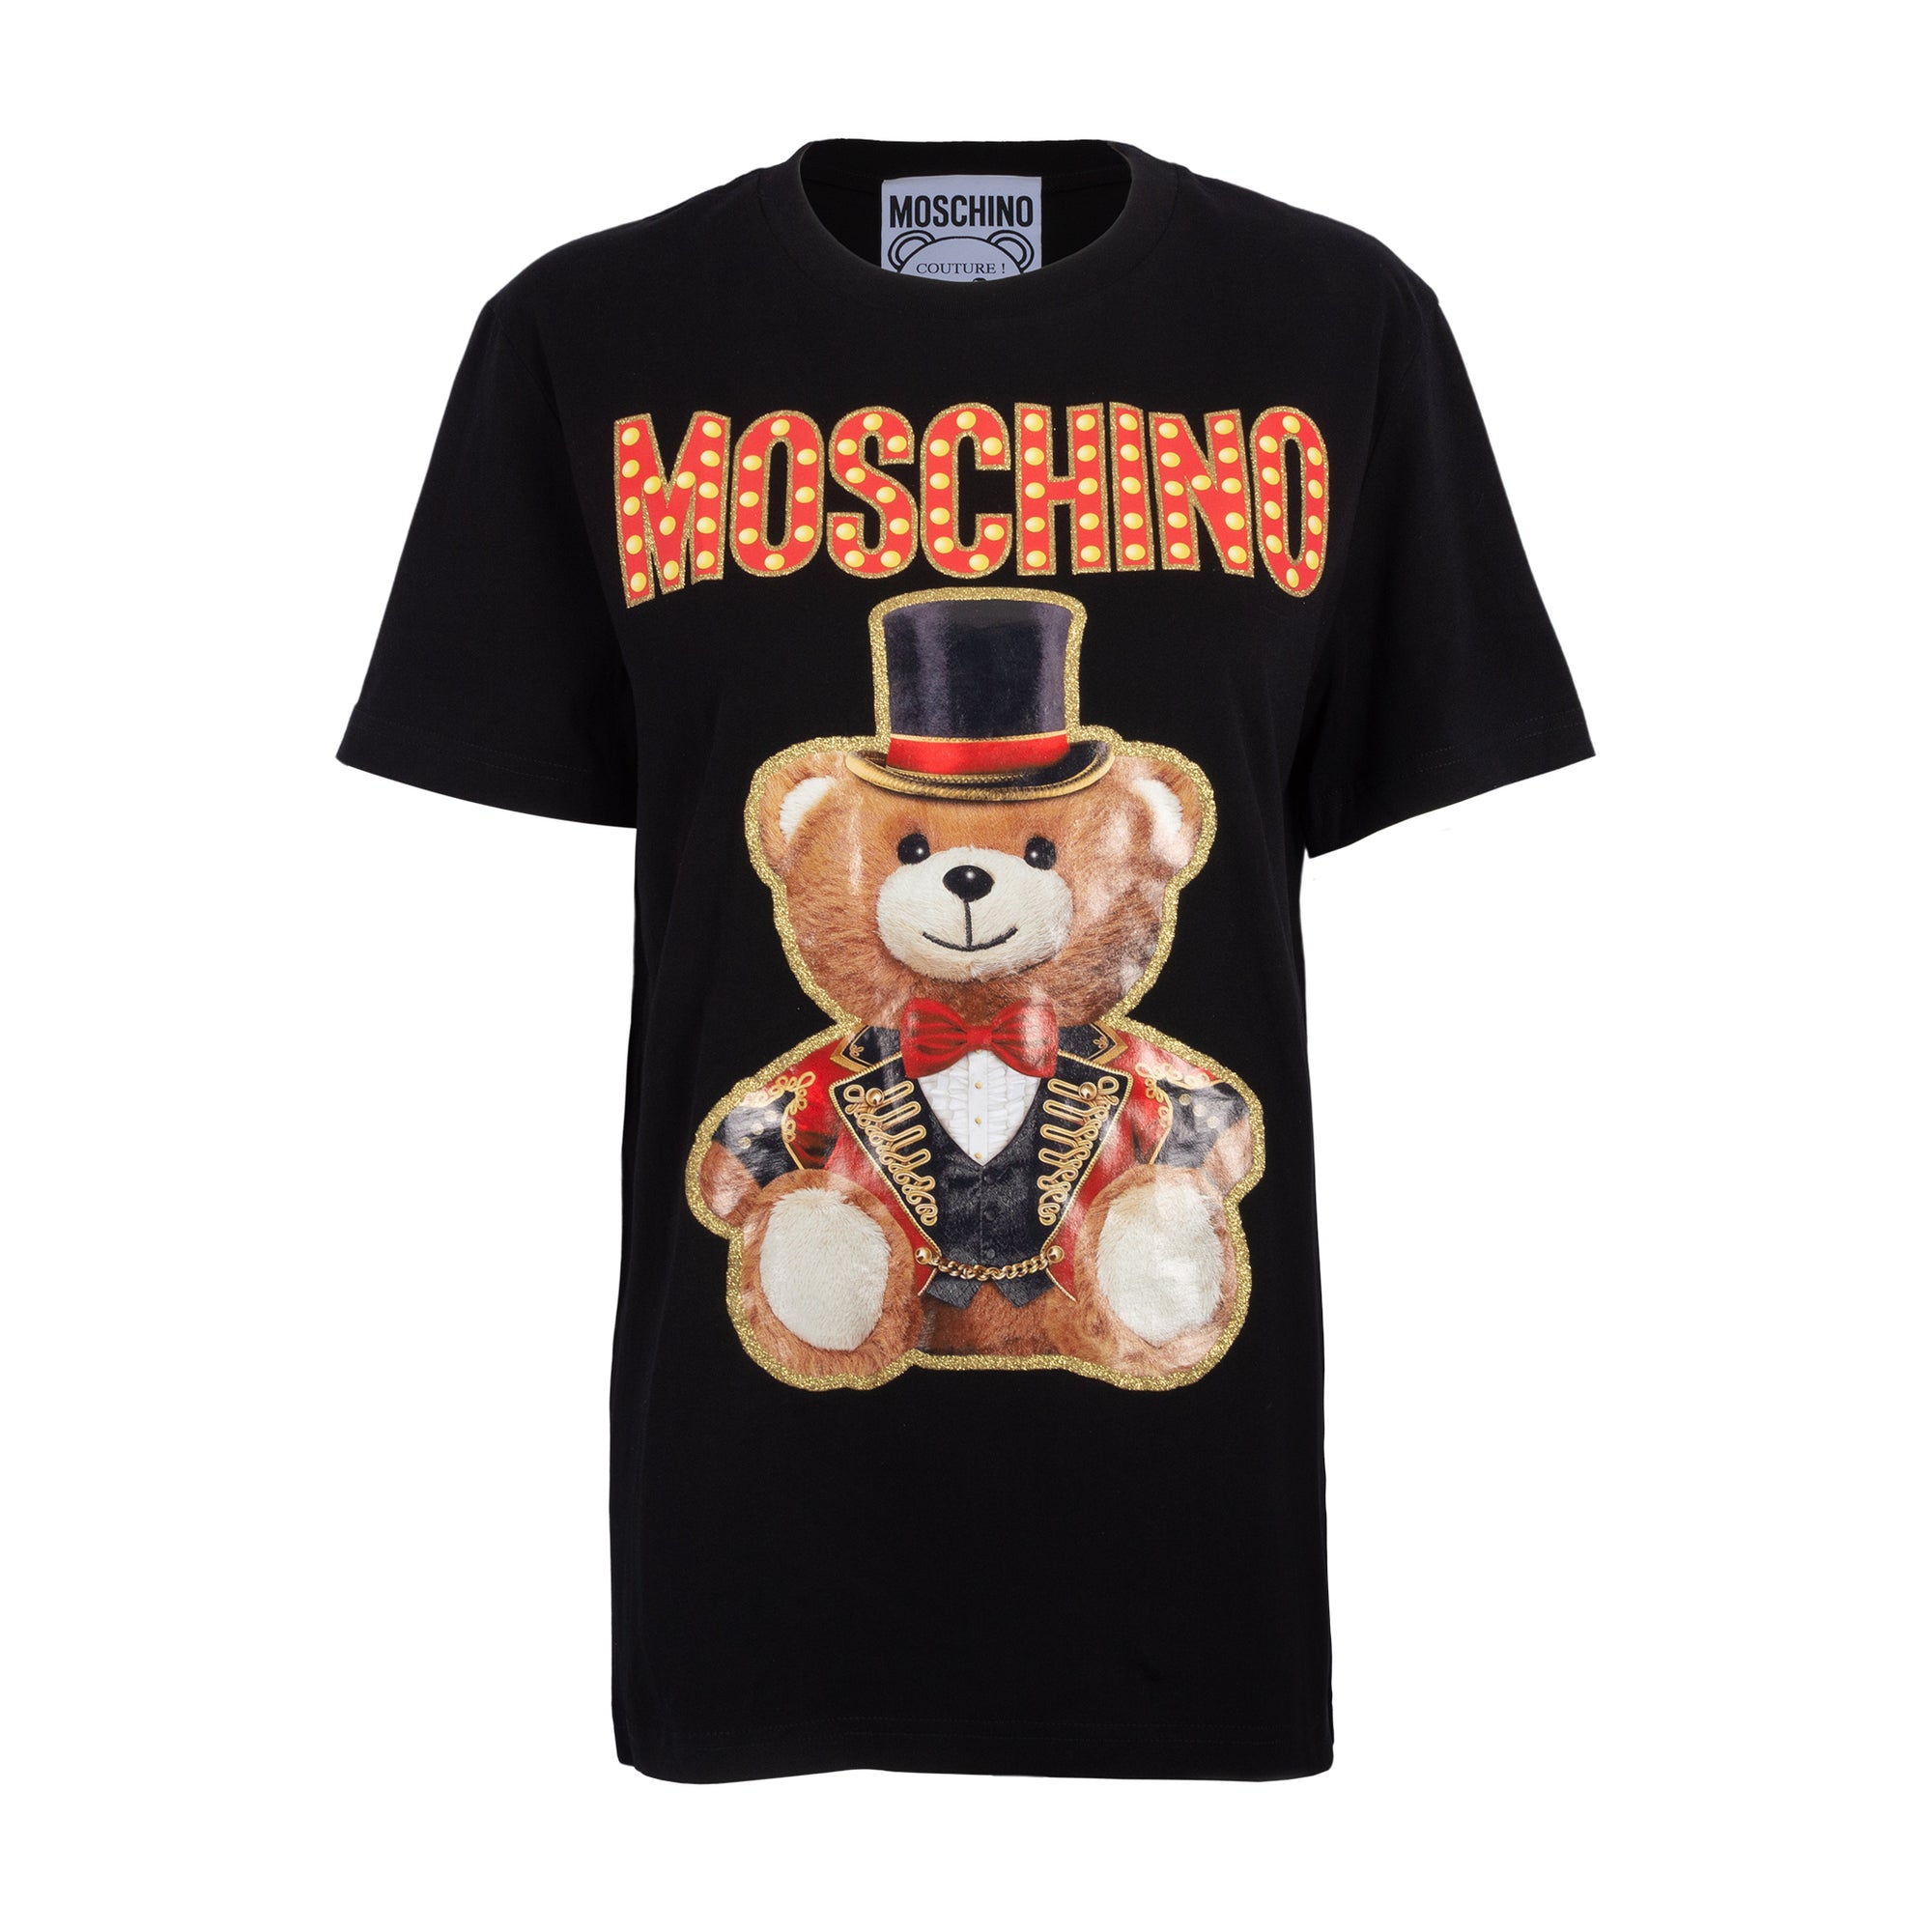 Moschino T-Shirt Circus